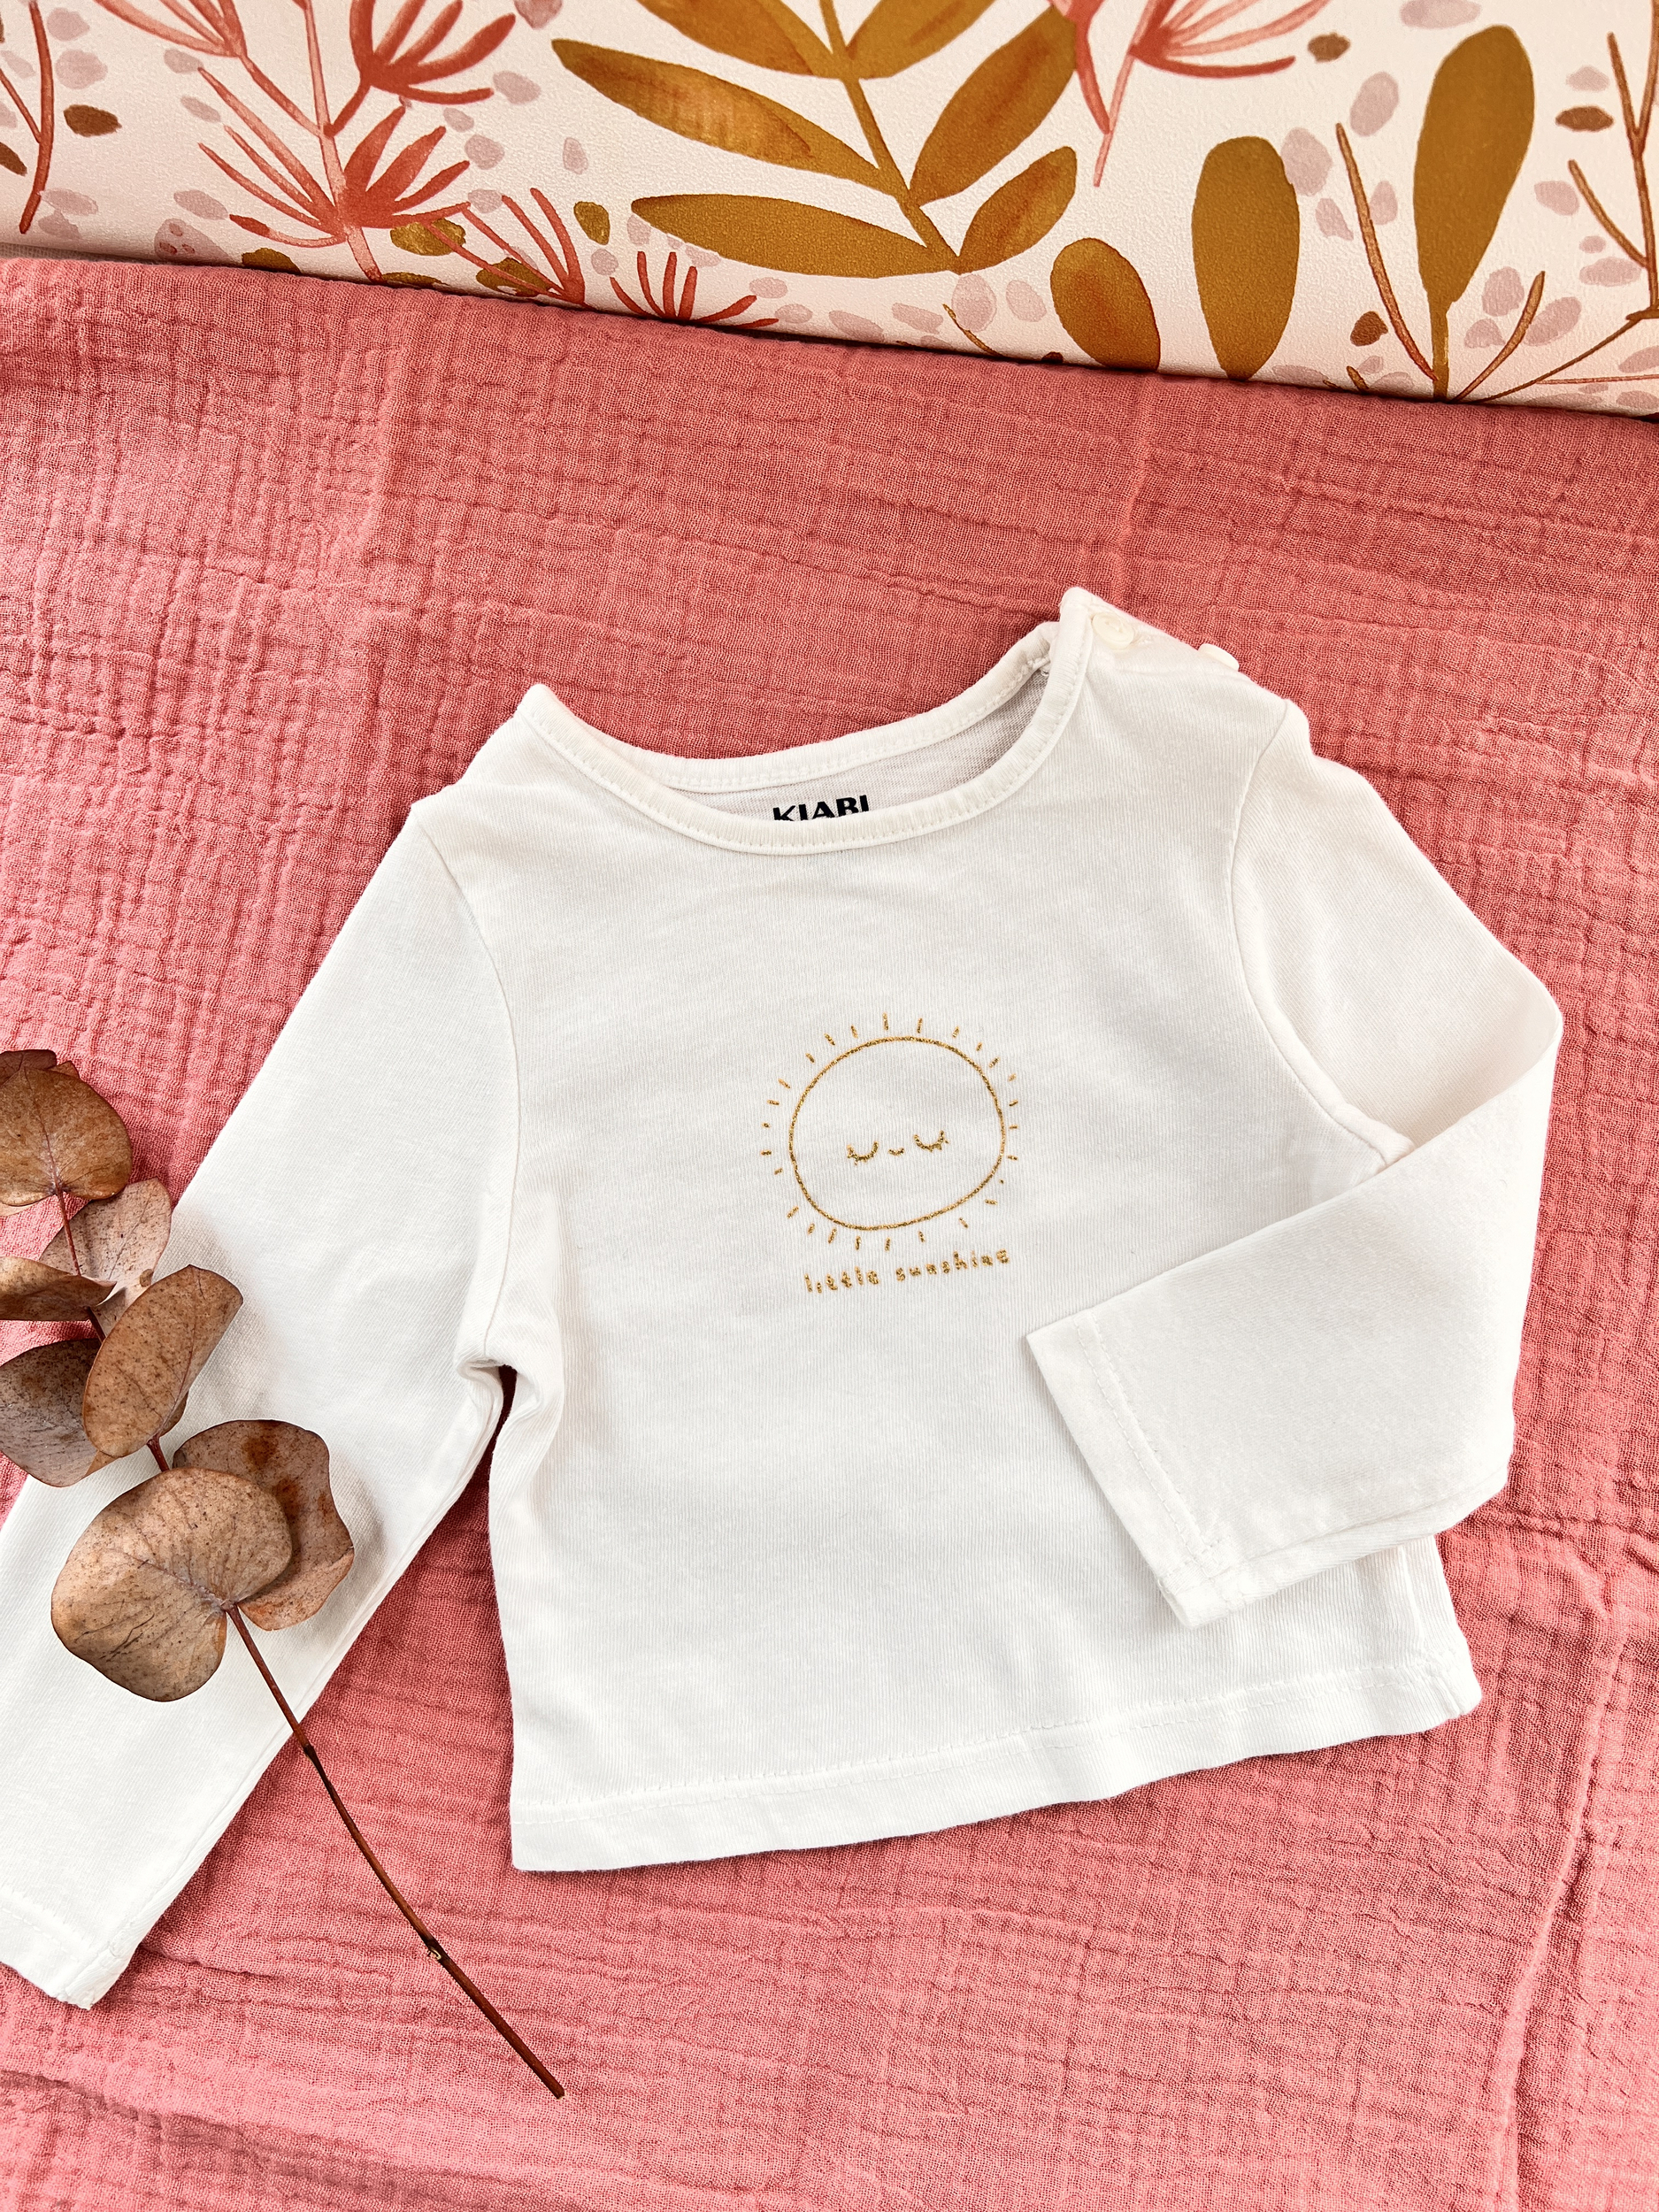 T-shirt blanc manches longues bébé fille - Kiabi - 1 mois